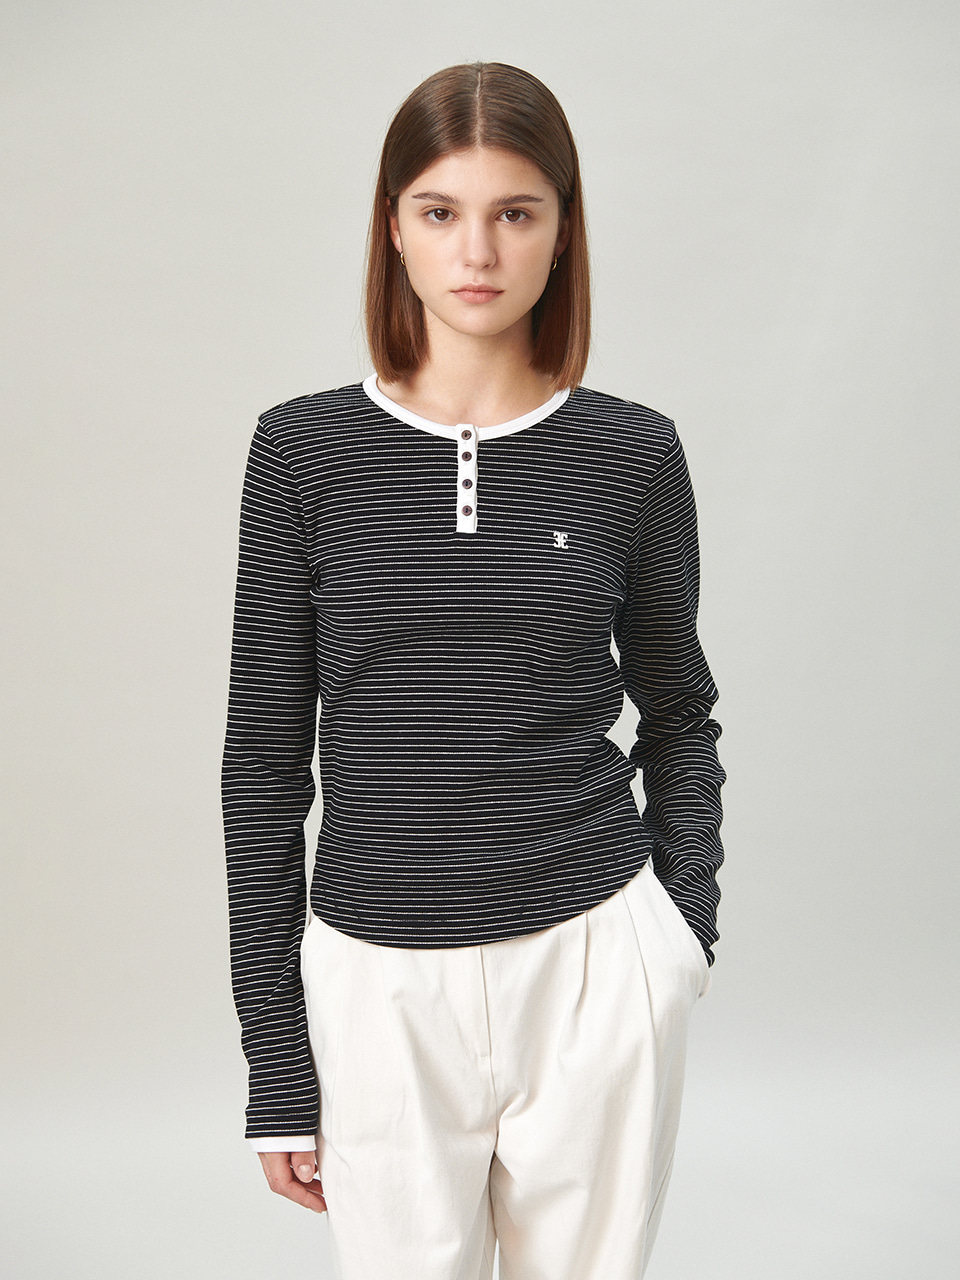 FOLNUA(フォルニュア) カラーレーションストライプTシャツ / ブラックホワイト